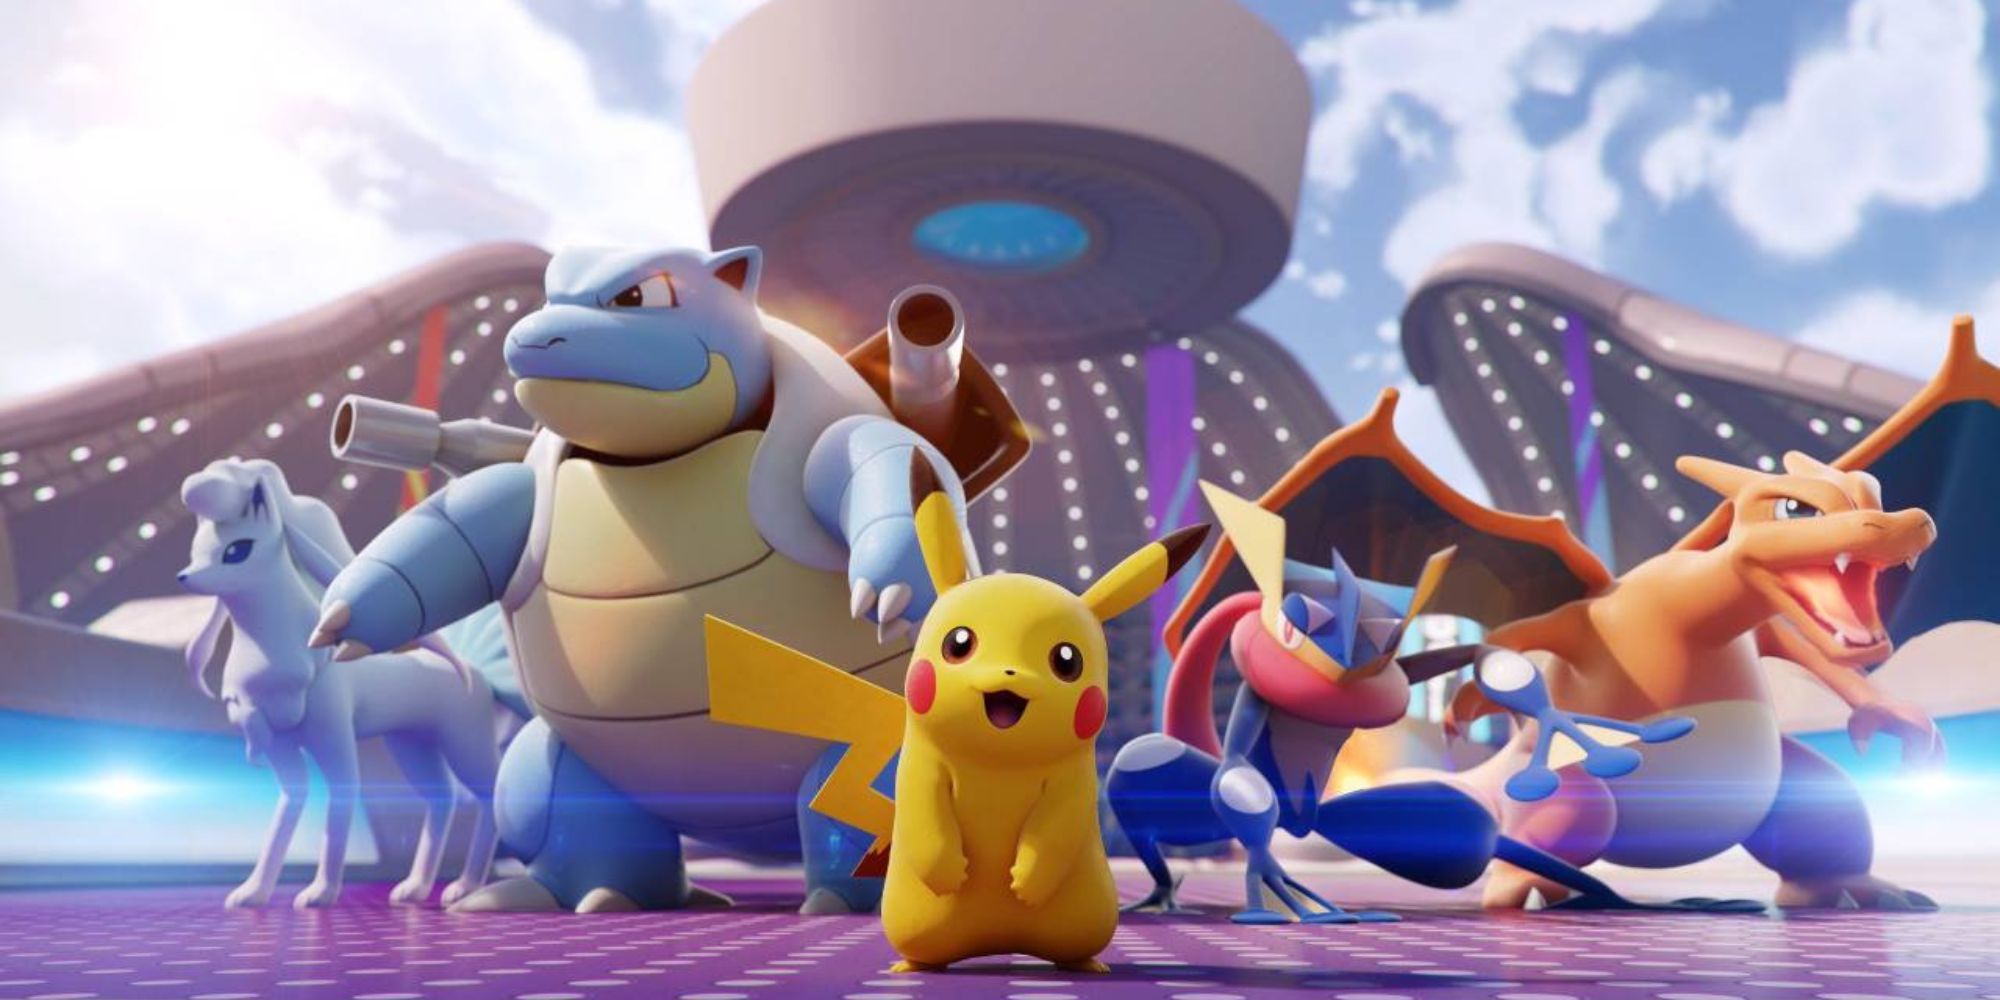 Pikachu, Greninja, Blastoise, Charizard, and Alolan Ninetails stand in a stadium